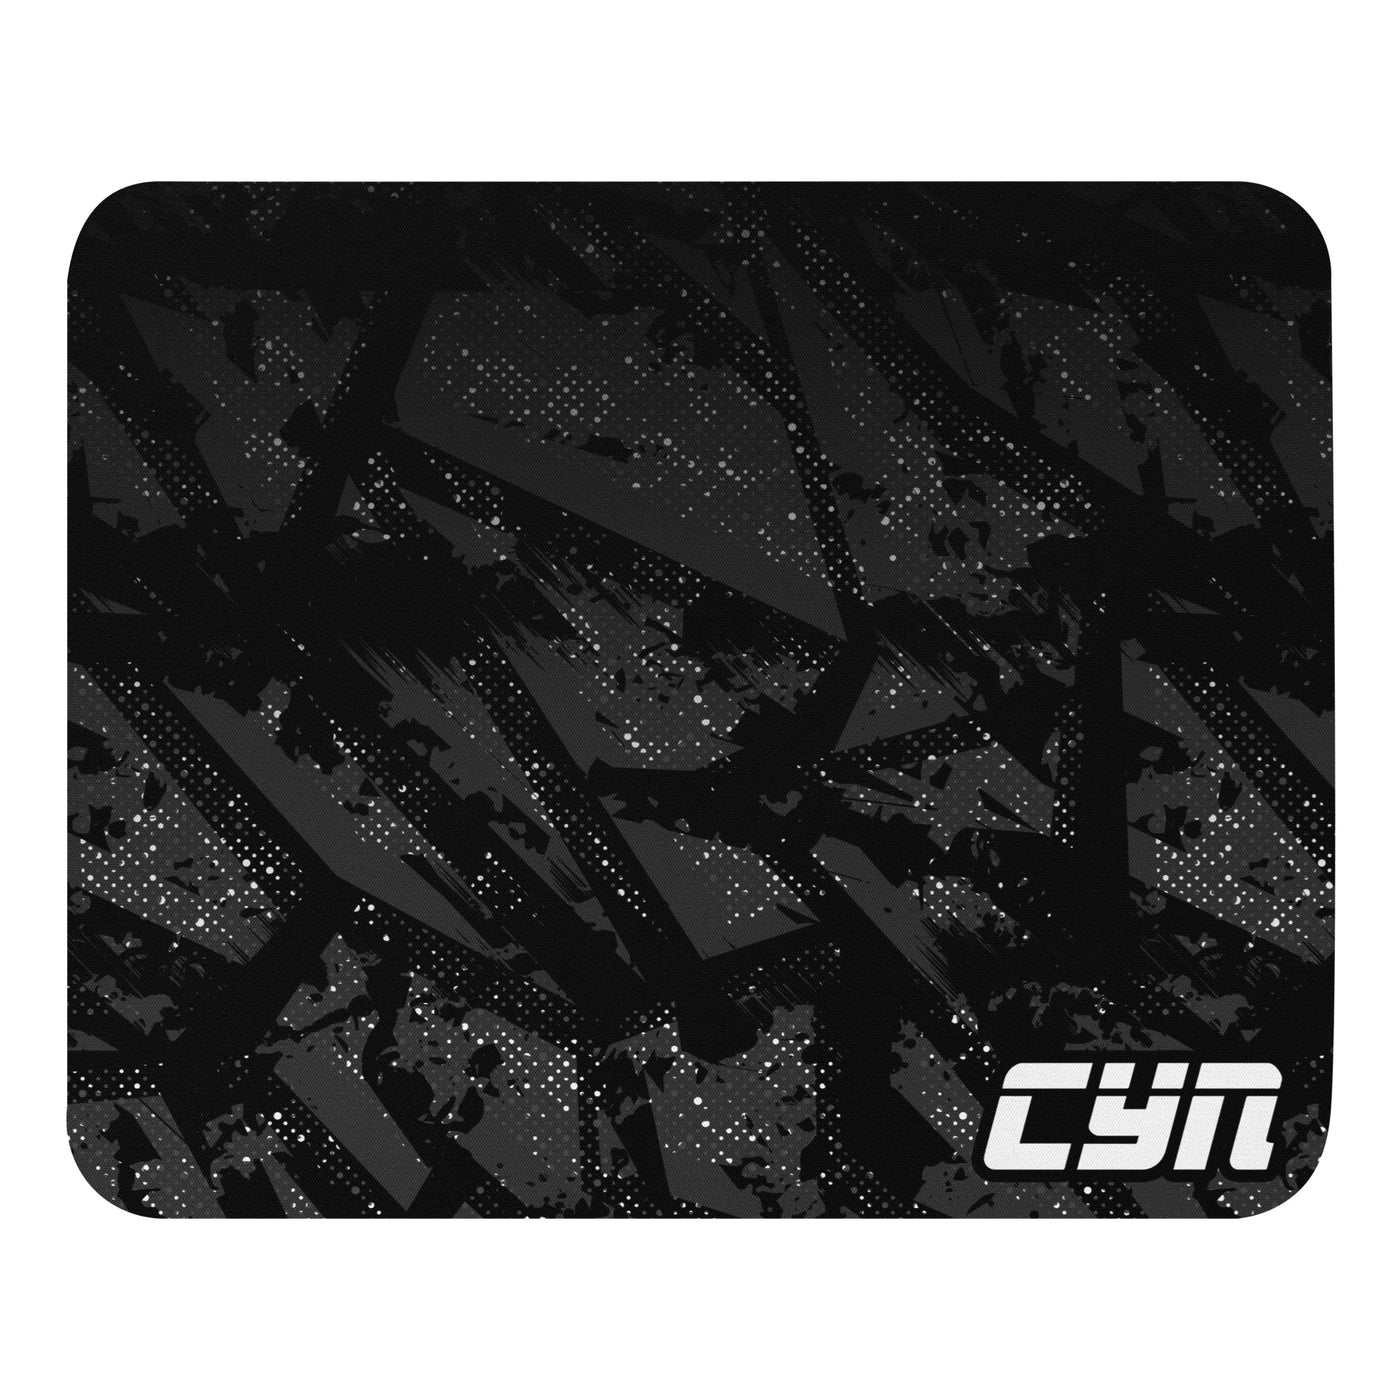 CYNAPSE Esports Mouse pad